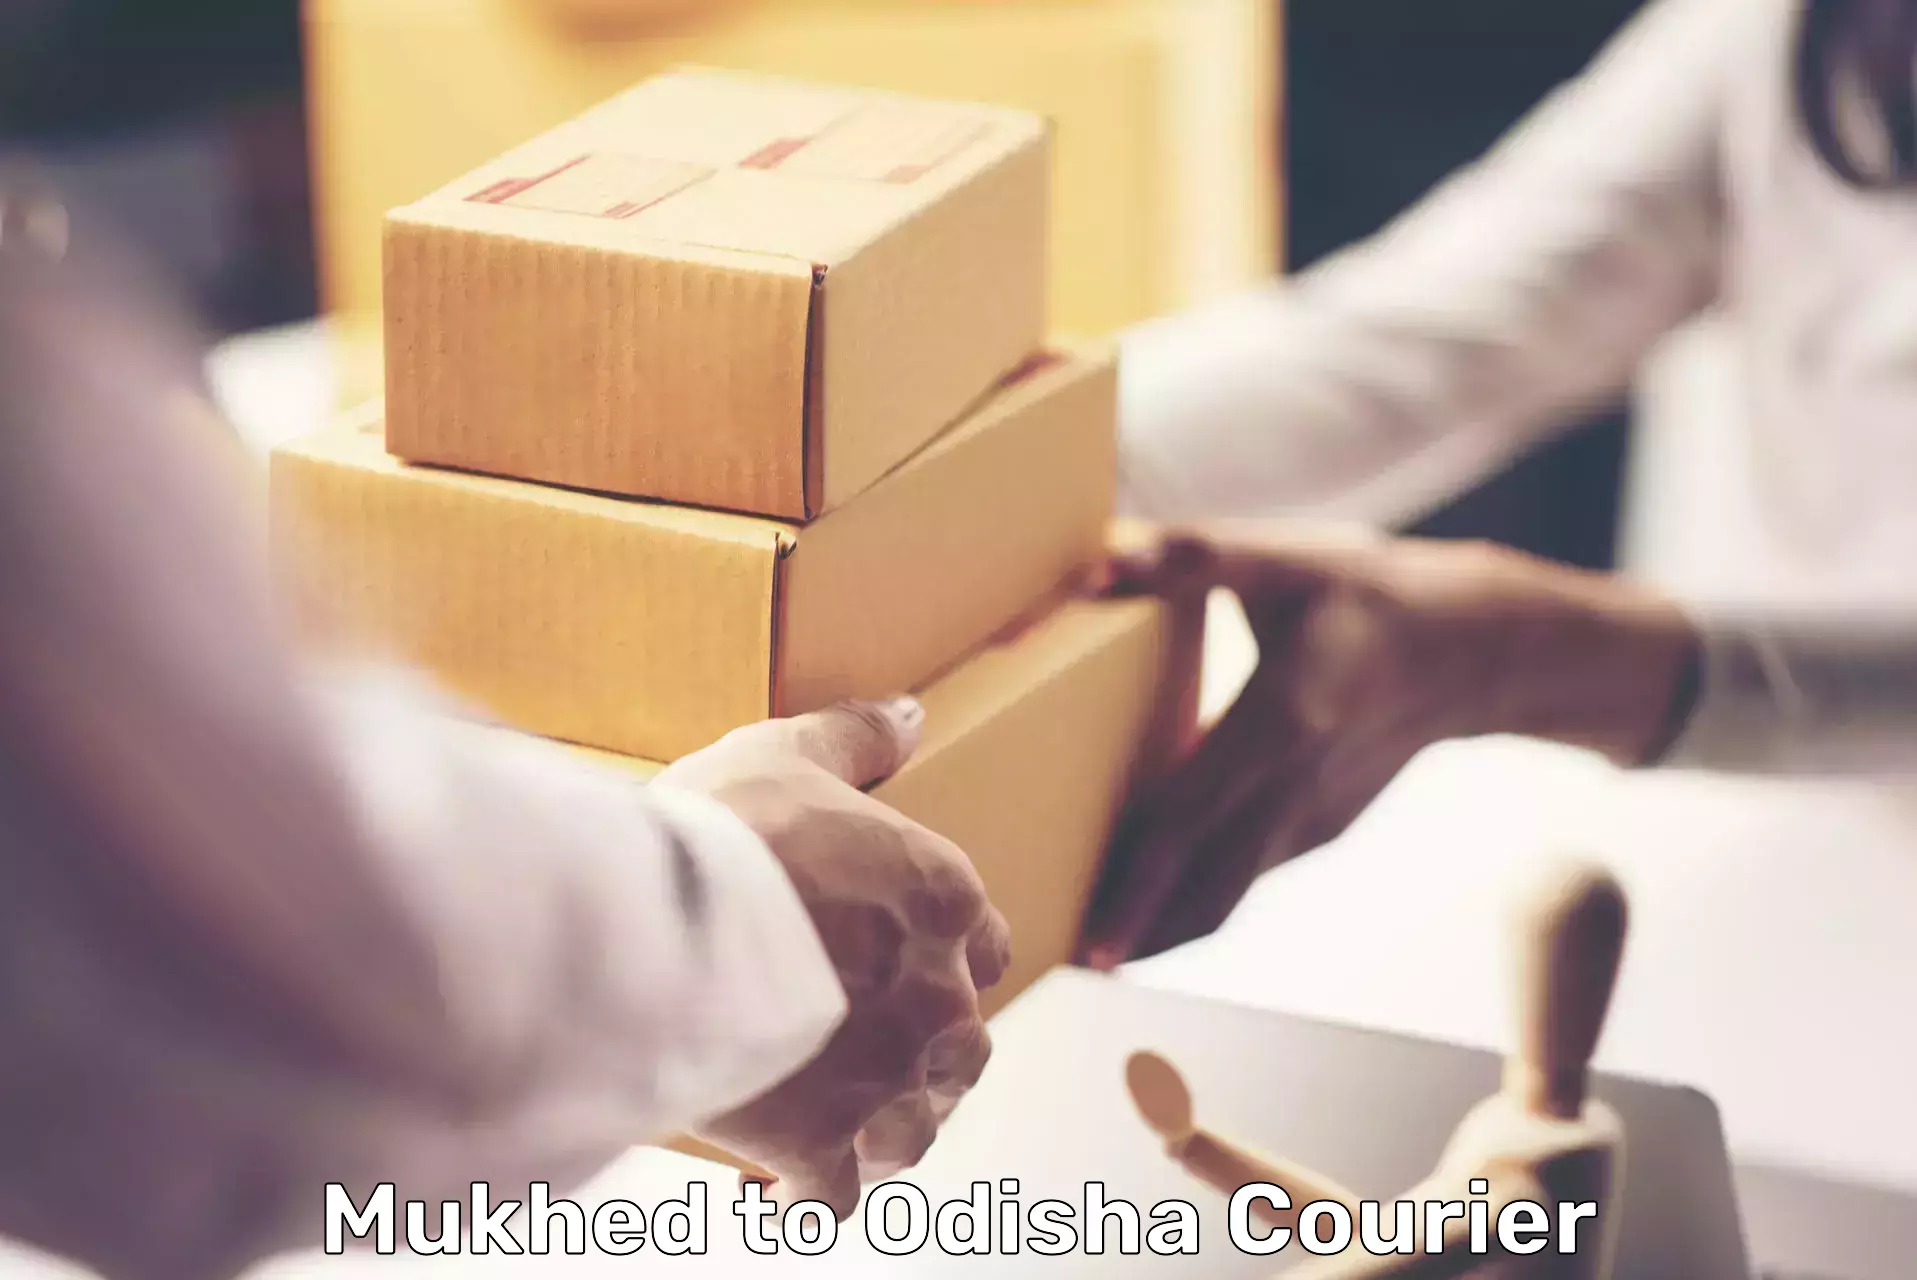 Efficient parcel service Mukhed to Saintala